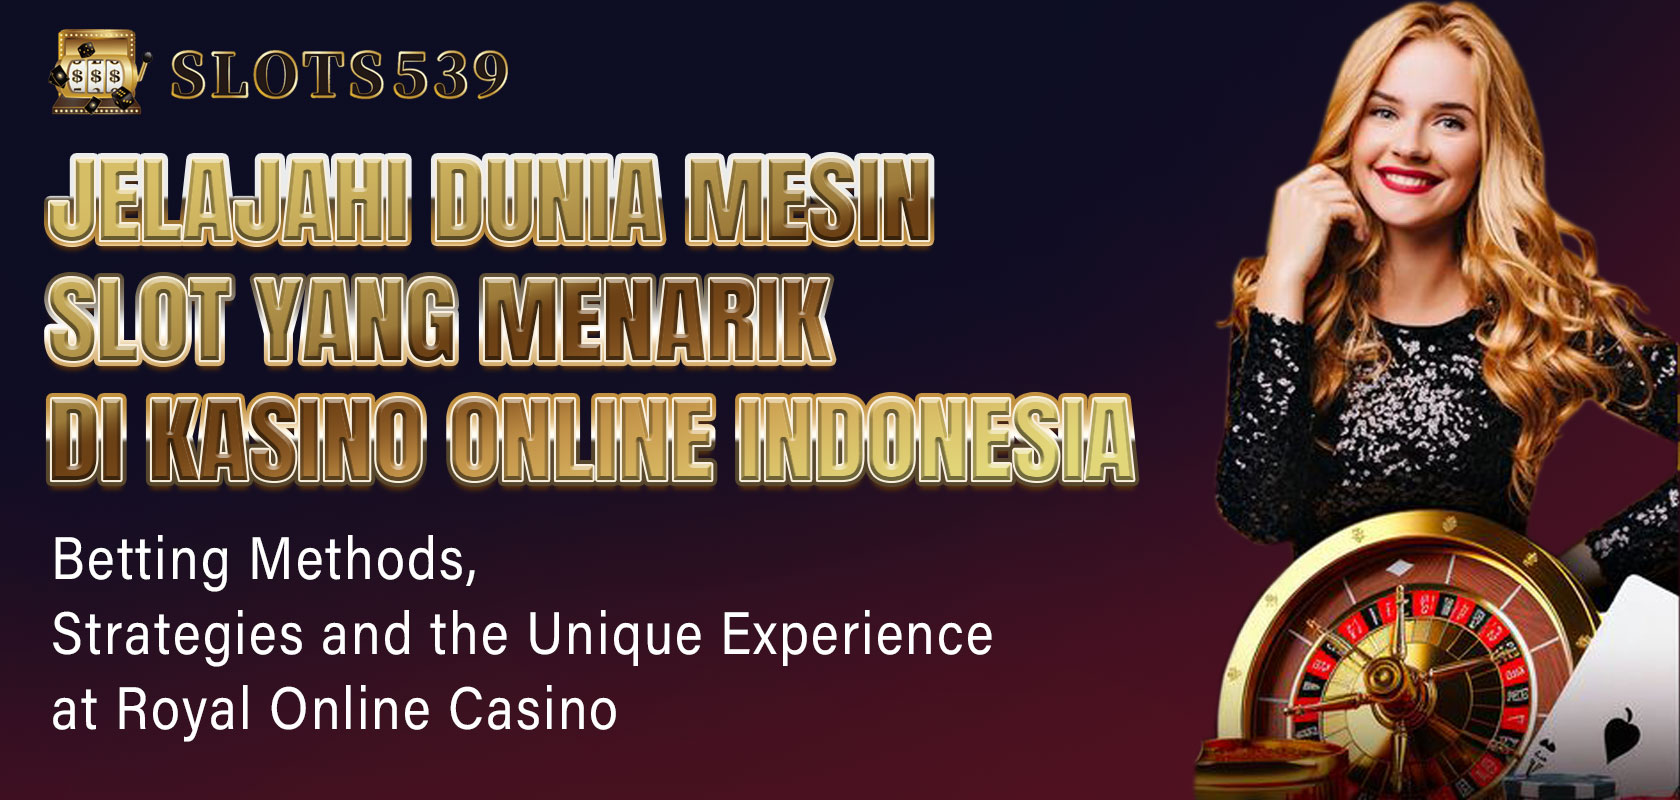 Jelajahi dunia mesin slot yang menarik di kasino online Indonesia jenis, gameplay, dan permainan yang direkomendasikan